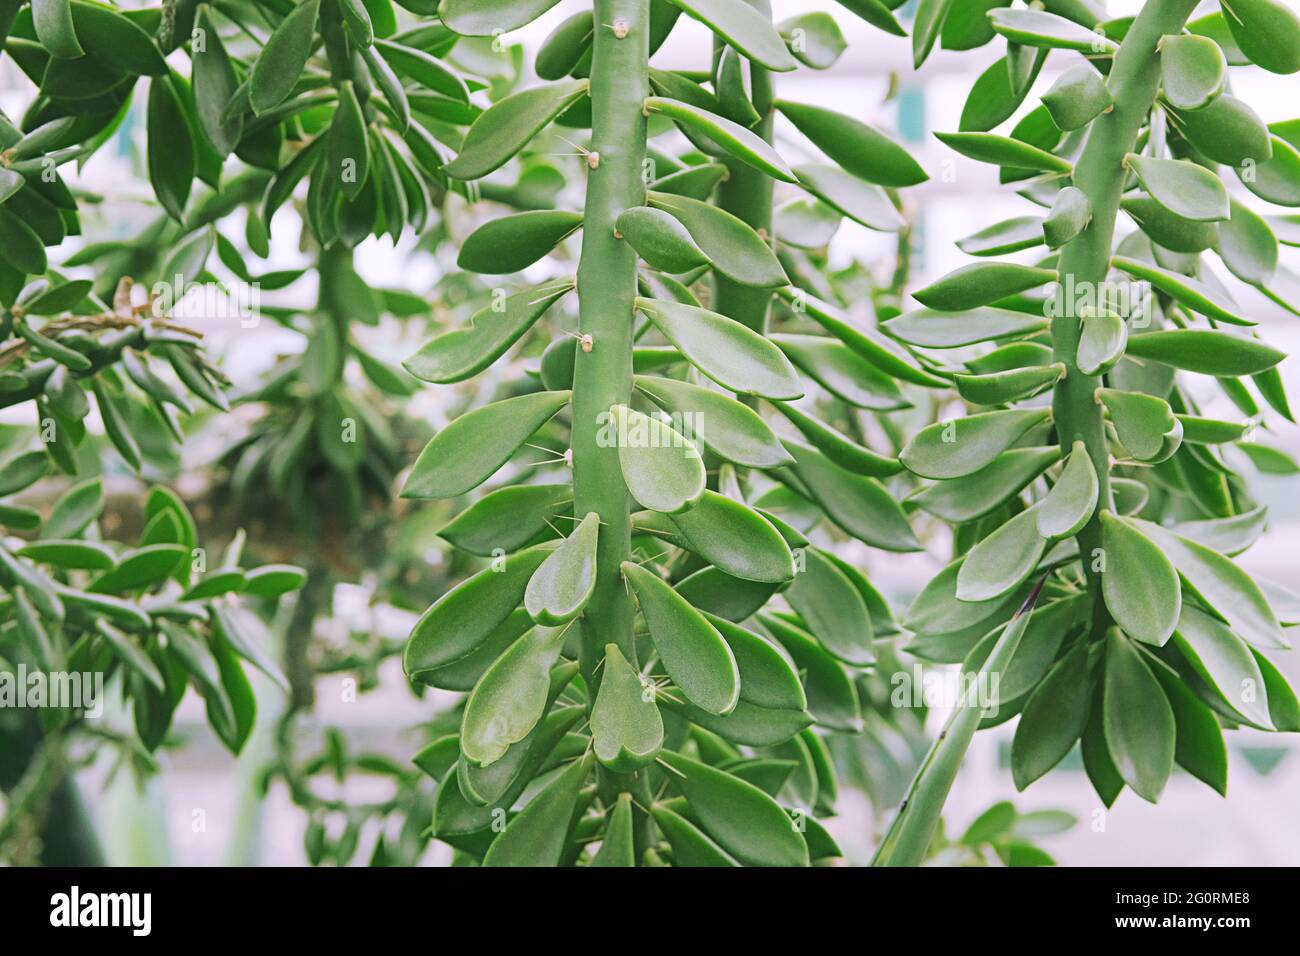 Im Freien mit grüner Sukulente Pflanze im Landschaftdesign, Geldbaum. Sukkulenten im Gartenbau, Nahaufnahme. Stockfoto